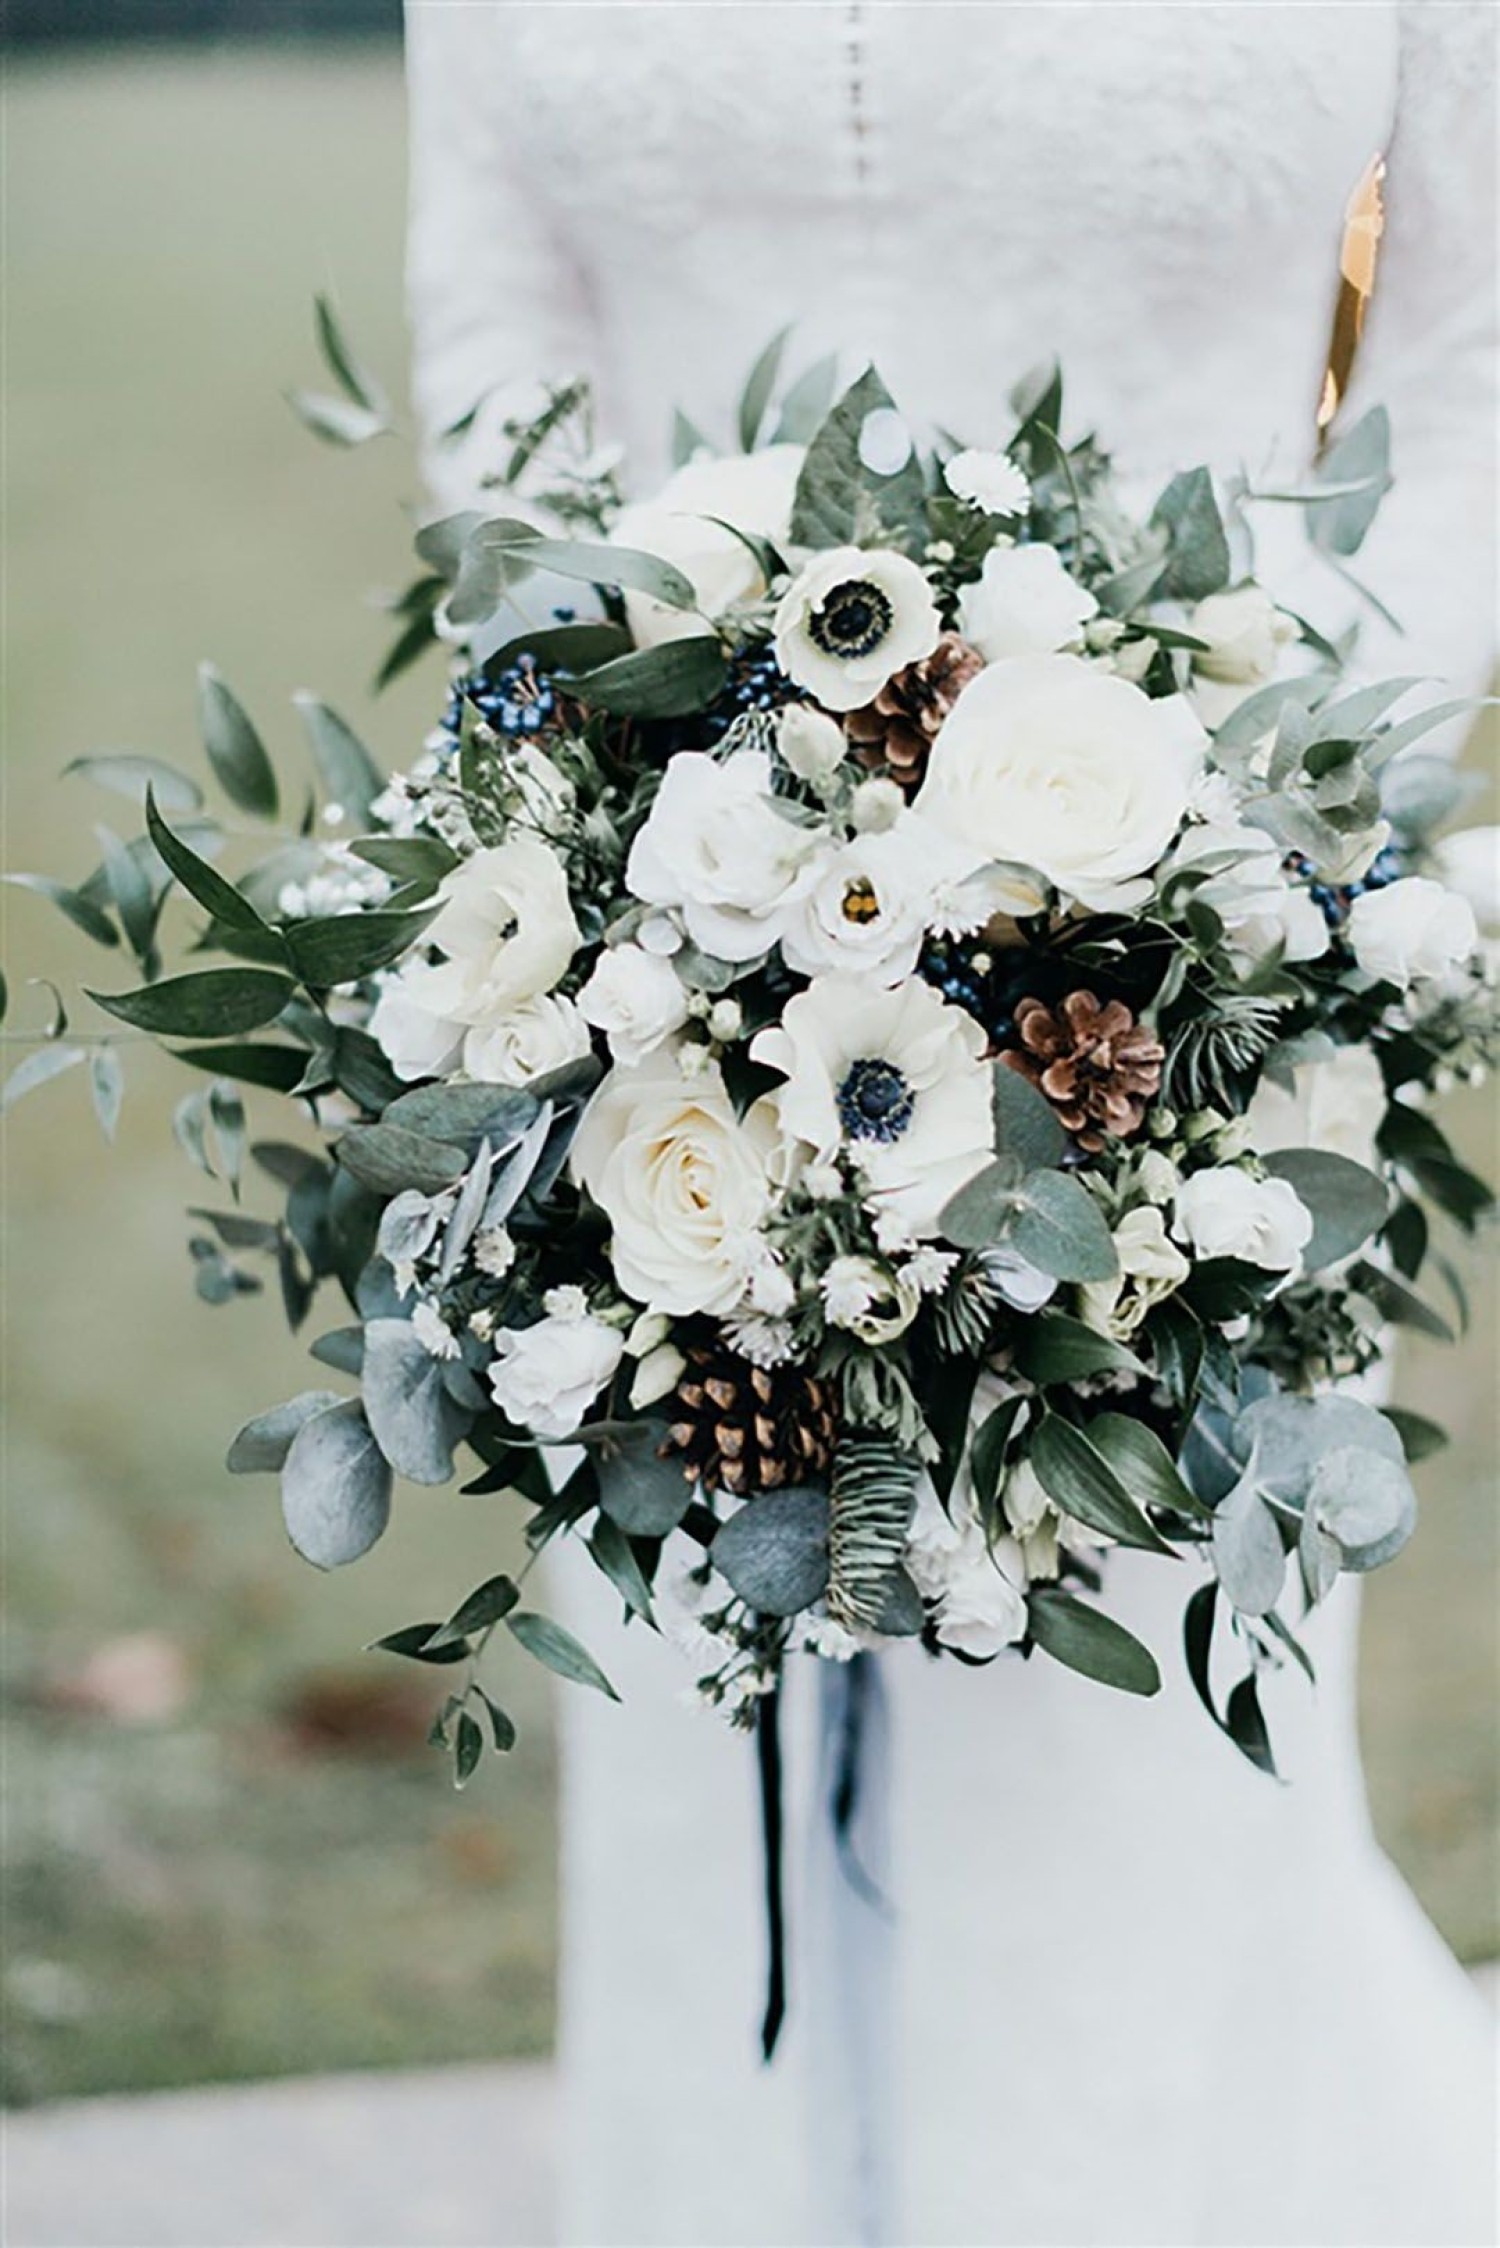 Живые или искусственные цветы на свадьбе: что выбрать?